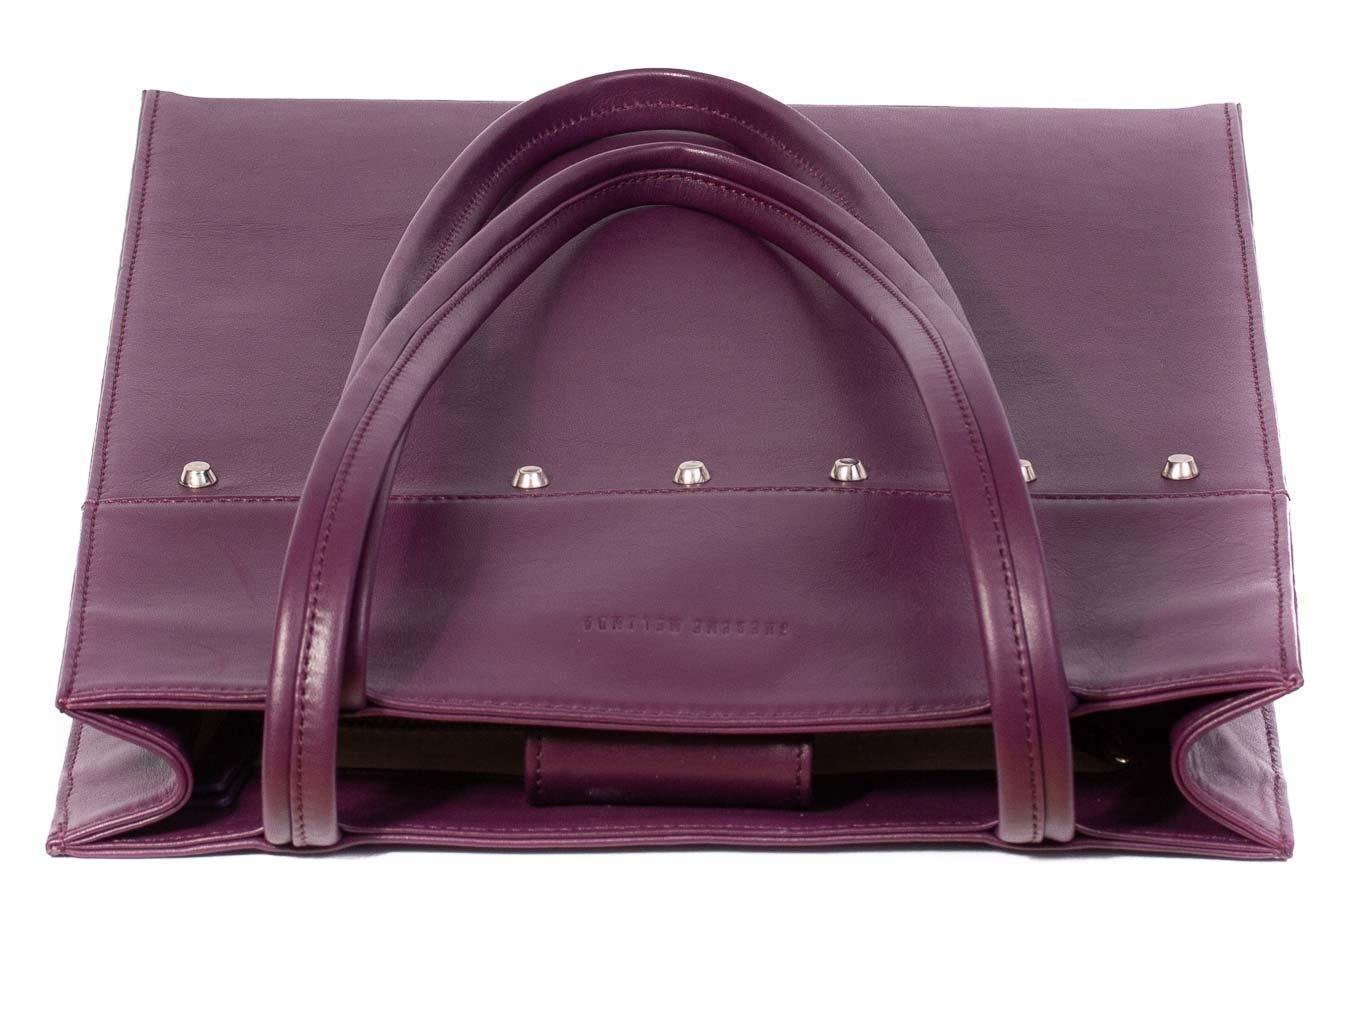 Tote Studded Handbag in Deep Purple by Sherene Melinda top